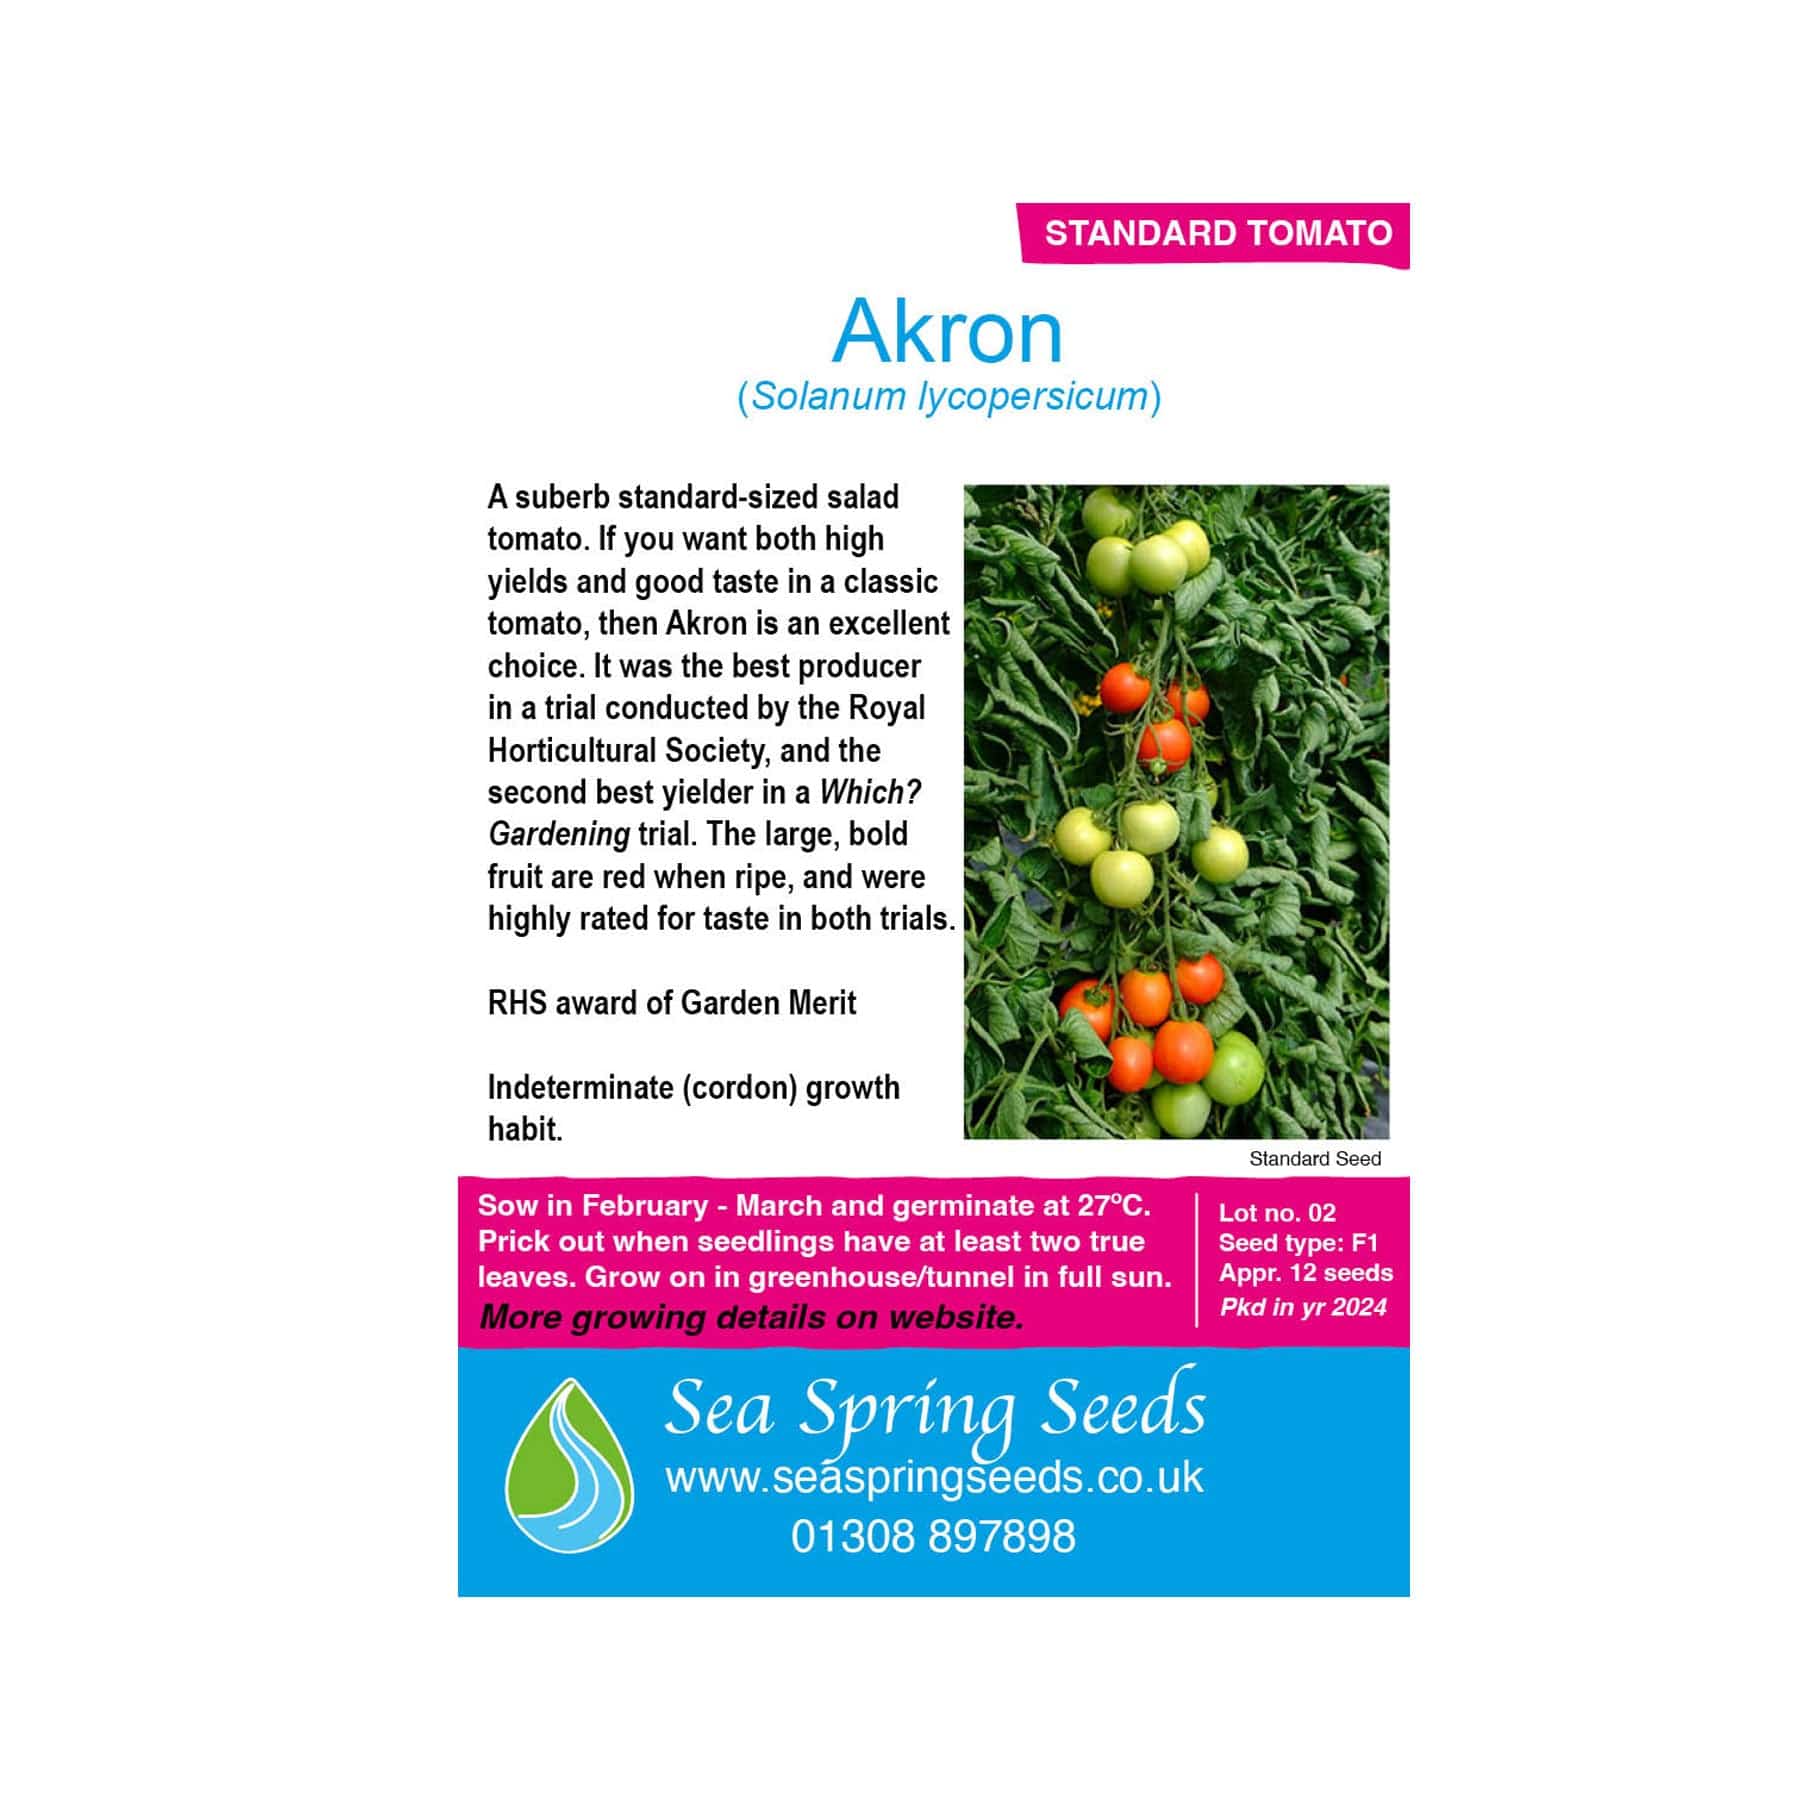 Akron tomato seeds